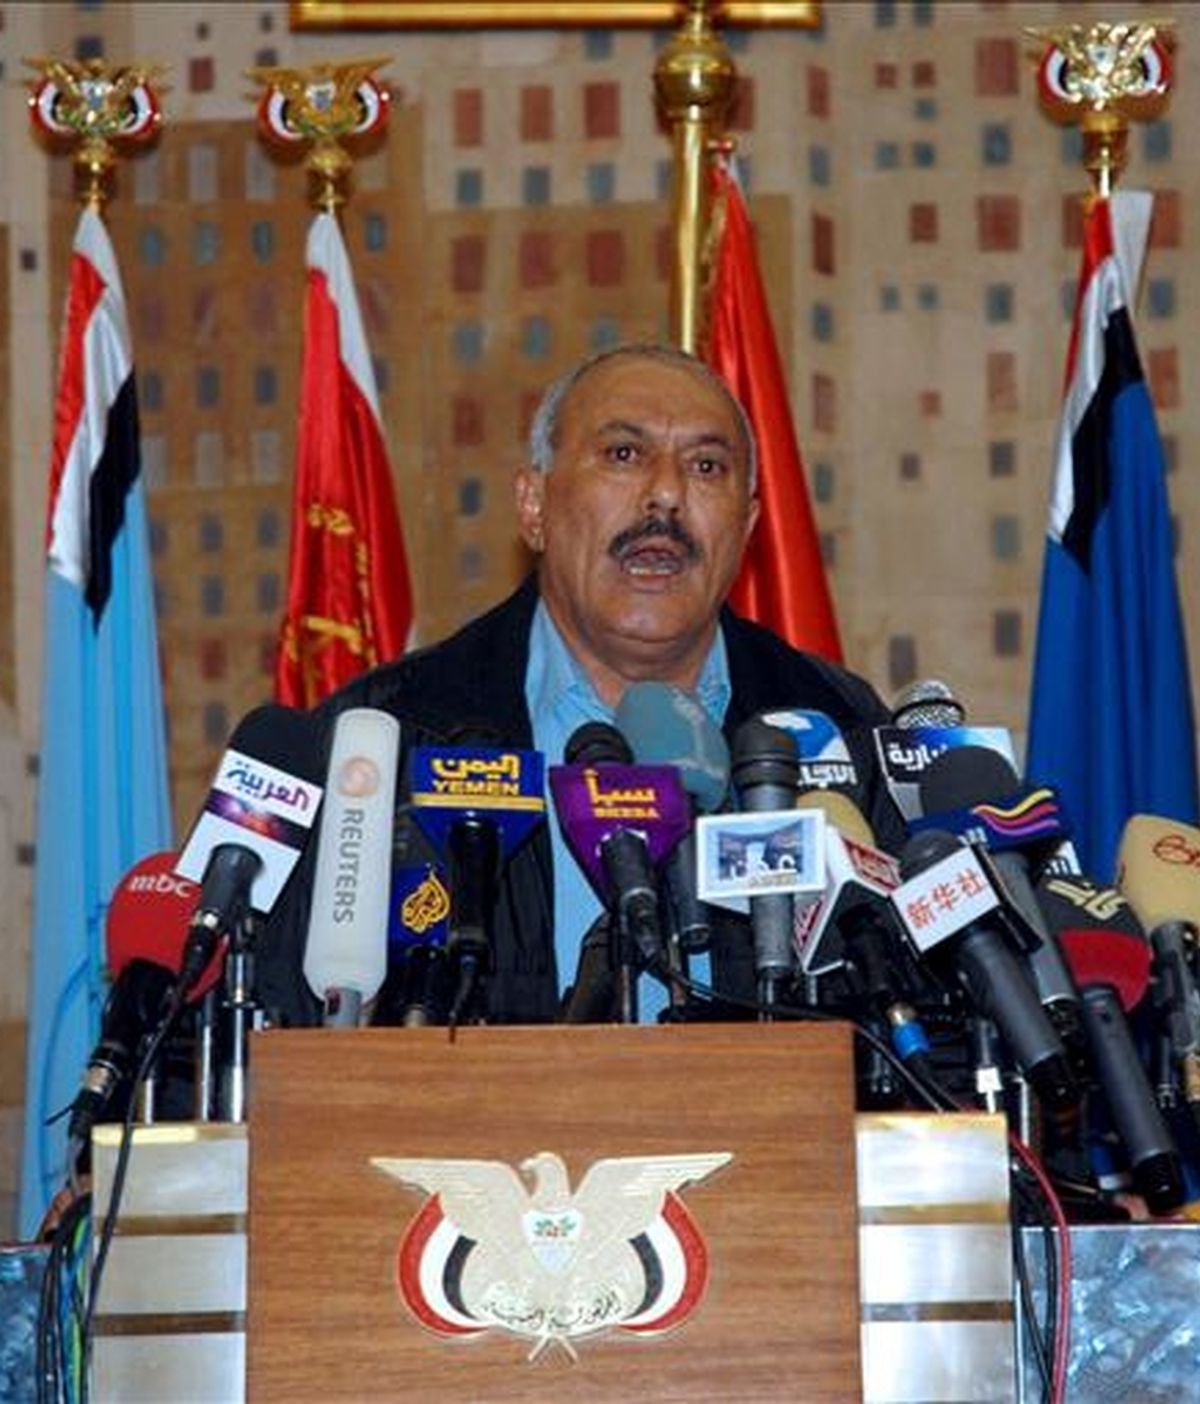 En un comunicado, AI señala la existencia de un cable fechado en enero del 2010 en el que el presidente de Yemen, Ali Abdullah Saleh, supuestamente asegura al general estadounidense David Petraeus que su Gobierno "continuará diciendo que las bombas son nuestras, no vuestras". En la imagen, el presidente yemení, Ali Abdullah Saleh. EFE/Archivo